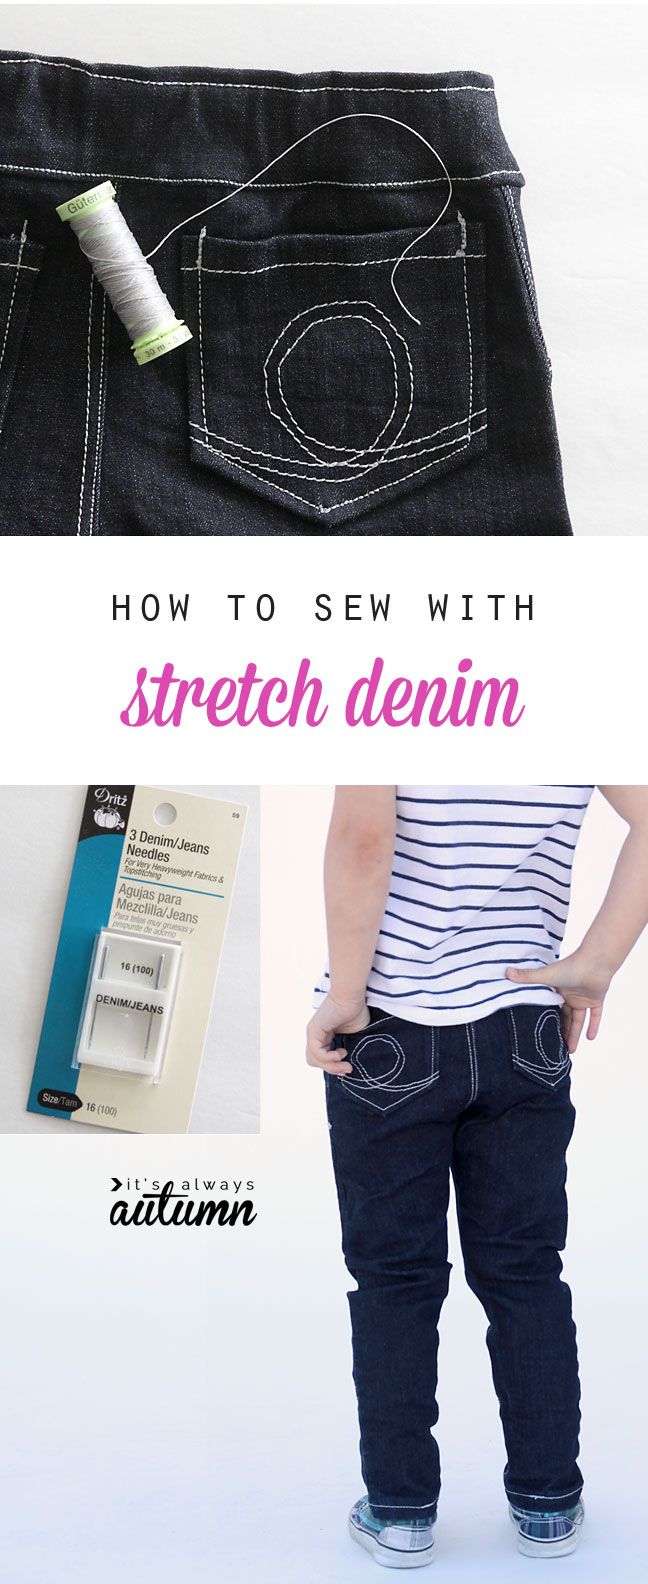 How to sew with stretch denim